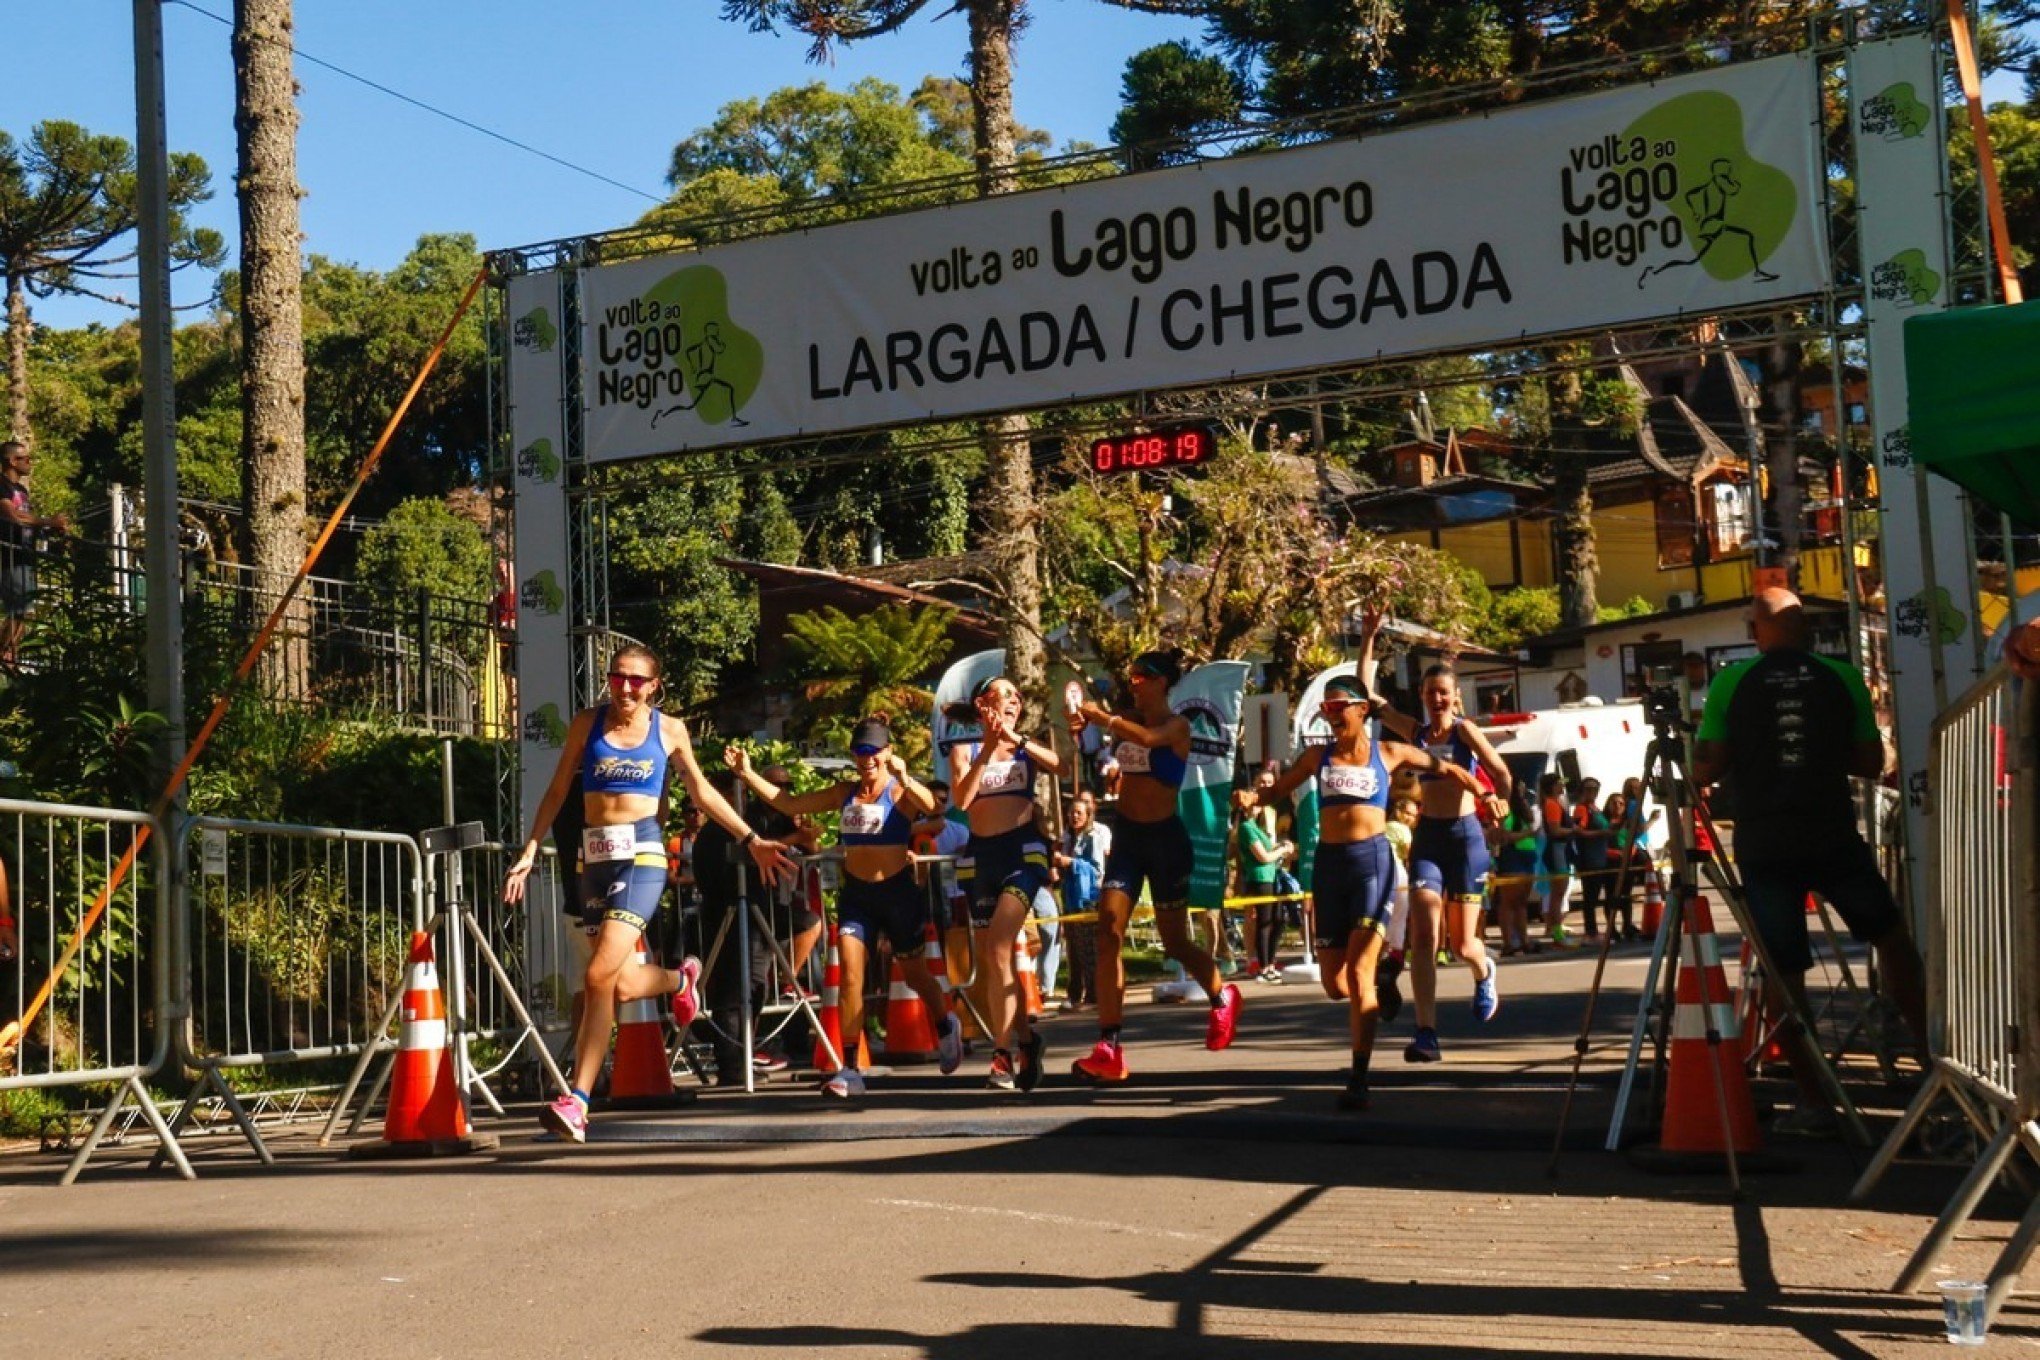 Volta ao Lago Negro reúne 235 atletas em Gramado